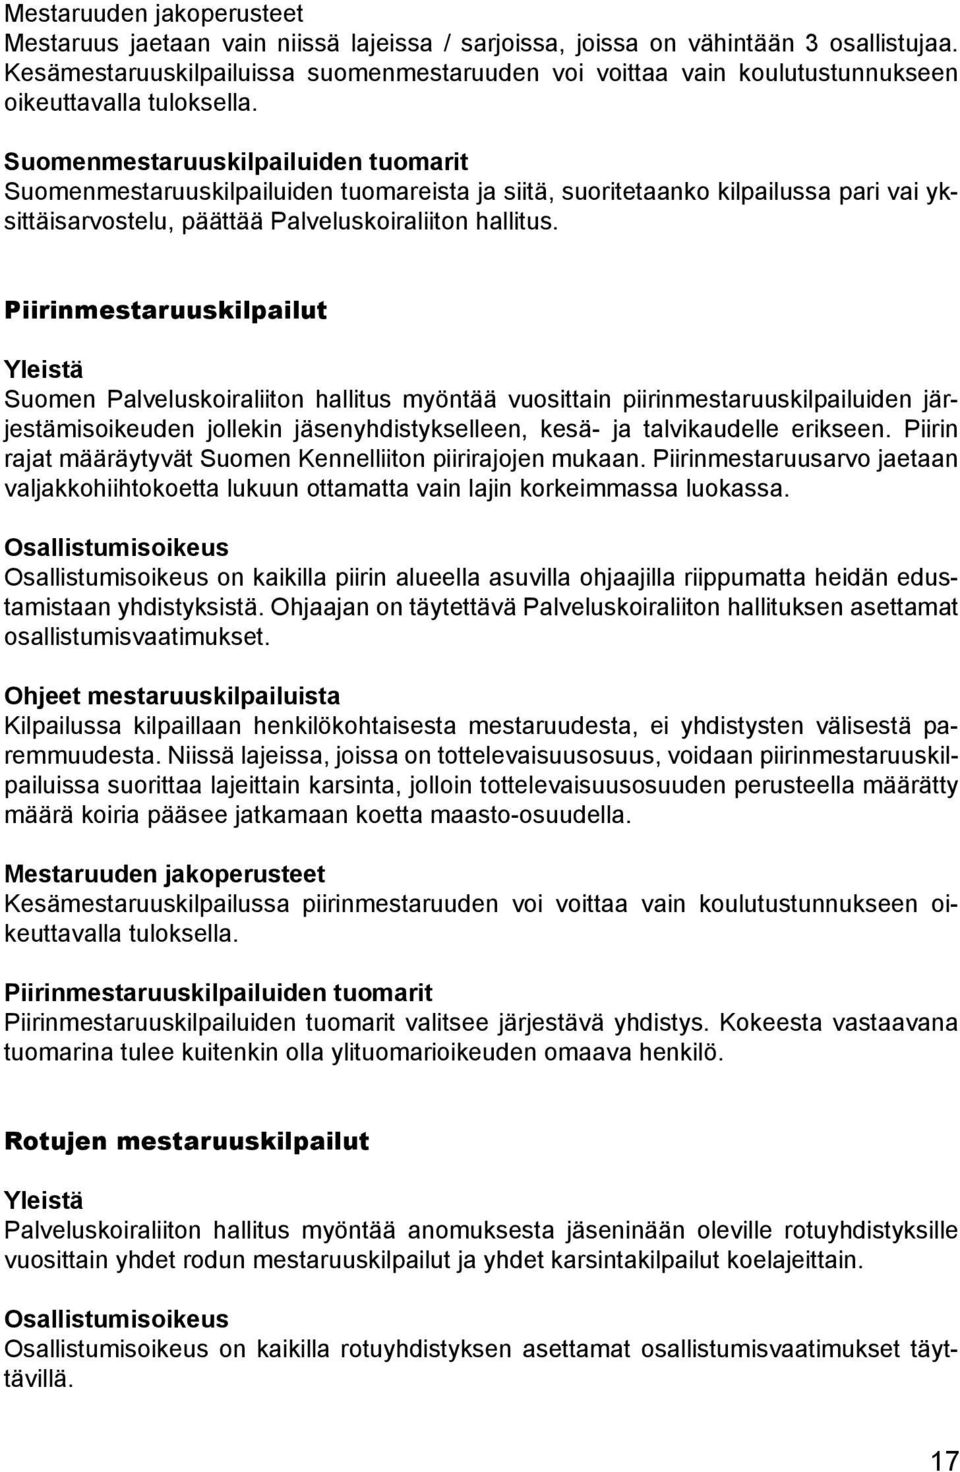 Suomenmestaruuskilpailuiden tuomarit Suomenmestaruuskilpailuiden tuomareista ja siitä, suoritetaanko kilpailussa pari vai yksittäisarvostelu, päättää Palveluskoiraliiton hallitus.